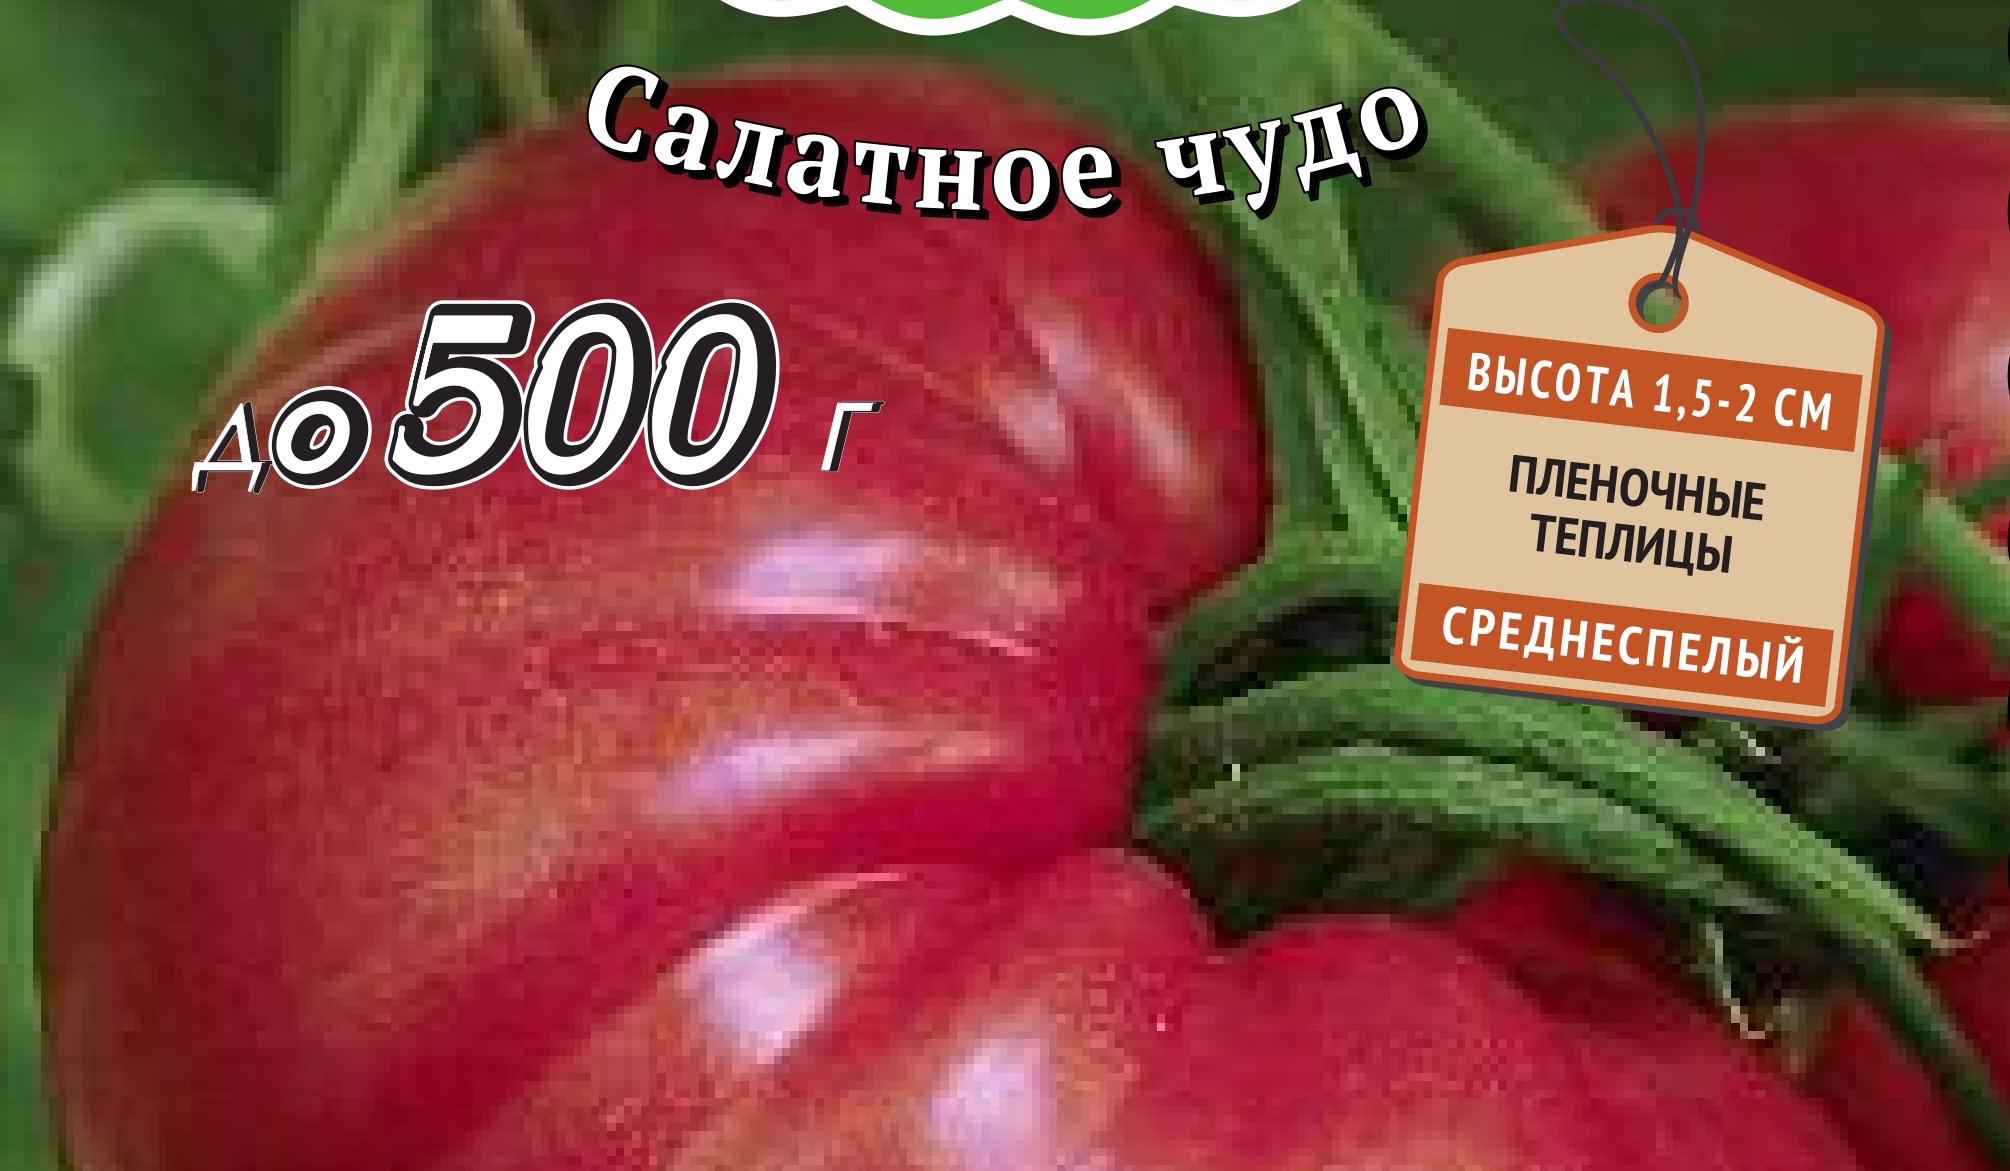 Сорта помидоров сибирской селекции для посадки в 2021 году в открытый грунт или теплицу